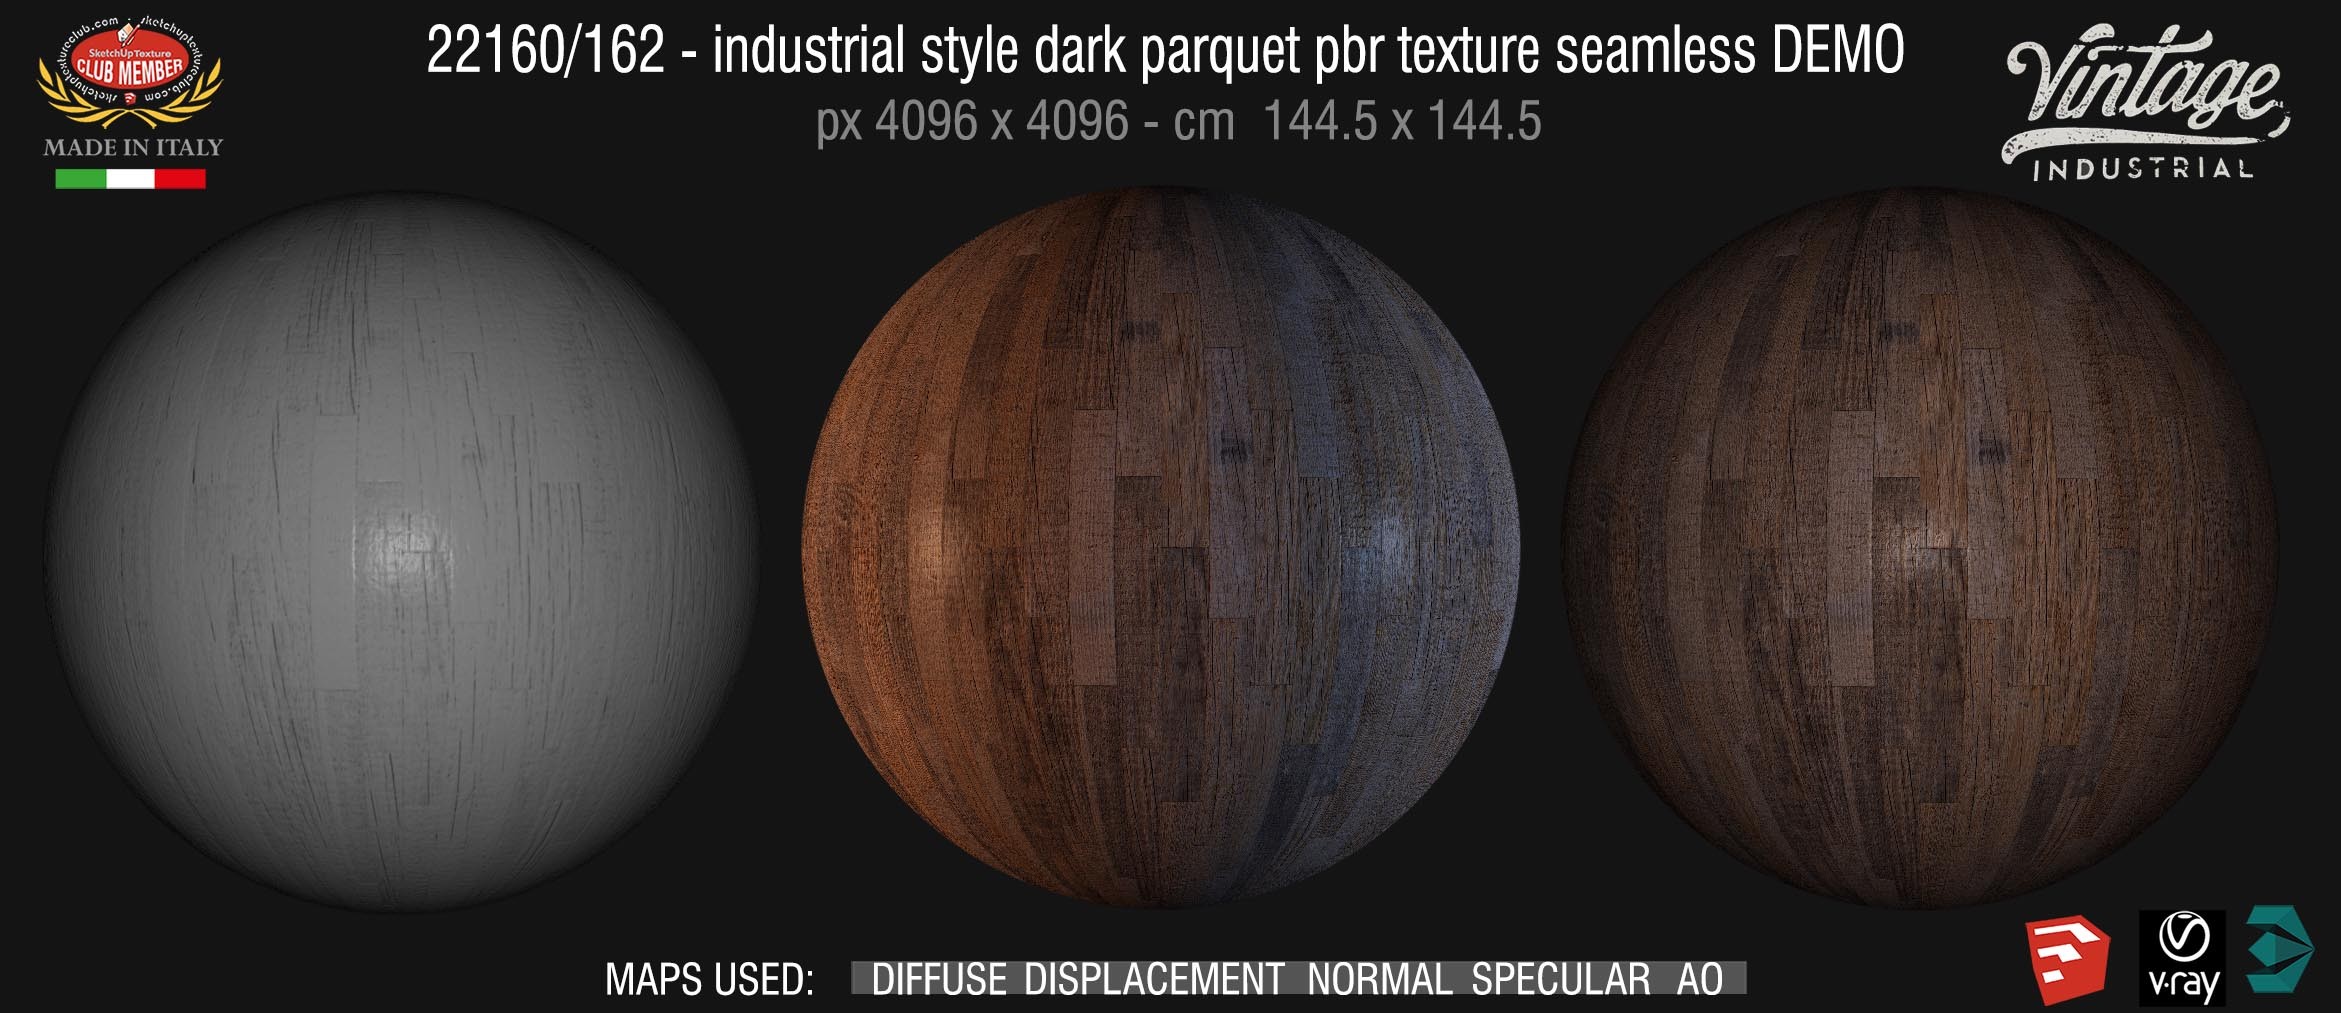 22160/162 industrial style dark parquet pbr texture seamless